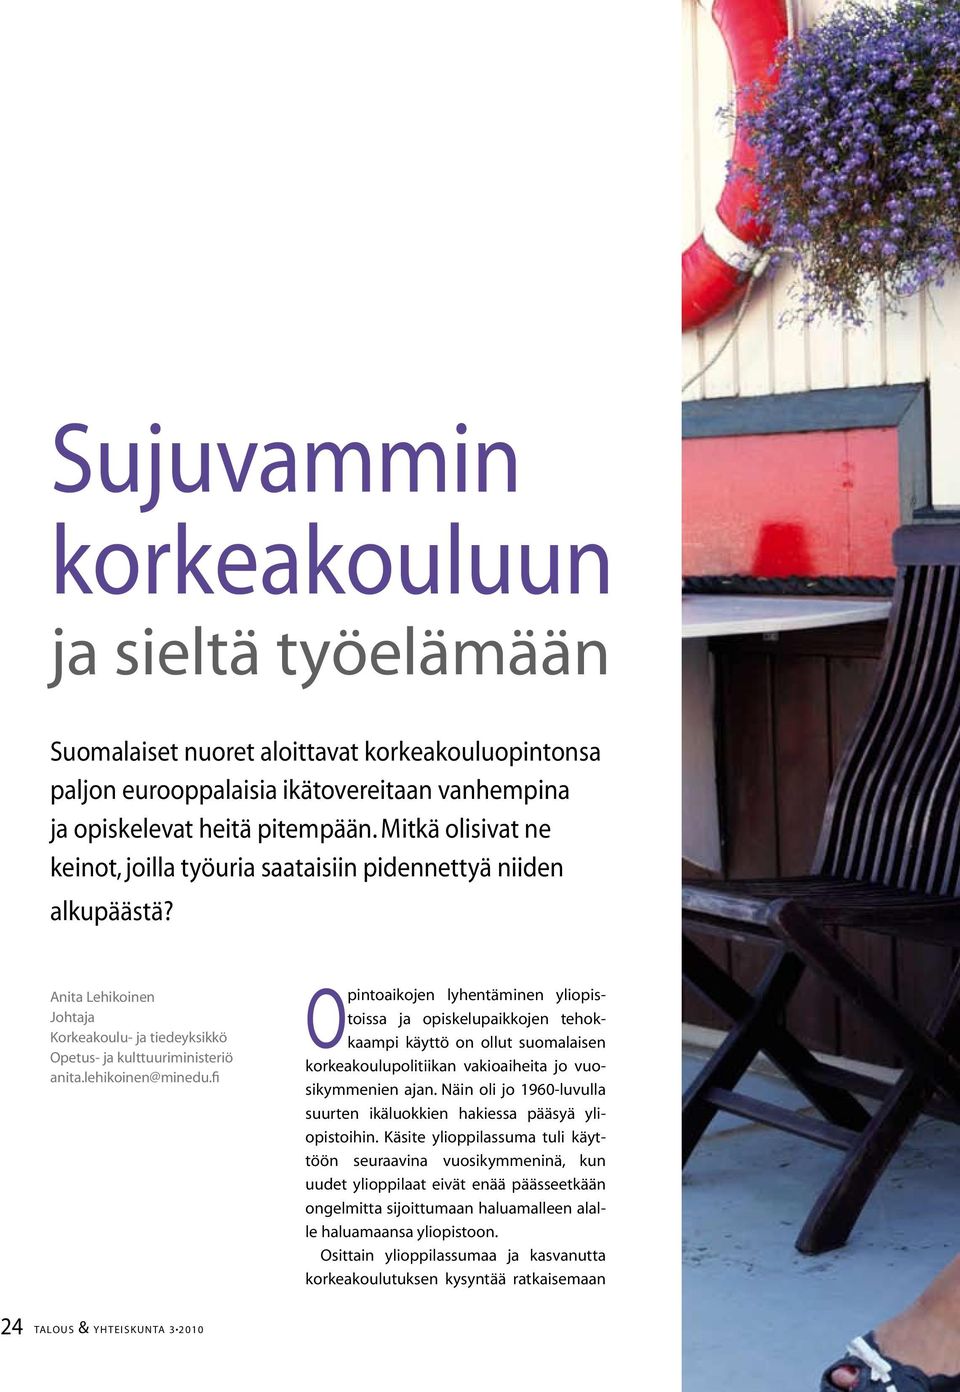 fi Opintoaikojen lyhentäminen yliopistoissa ja opiskelupaikkojen tehokkaampi käyttö on ollut suomalaisen korkeakoulupolitiikan vakioaiheita jo vuosikymmenien ajan.